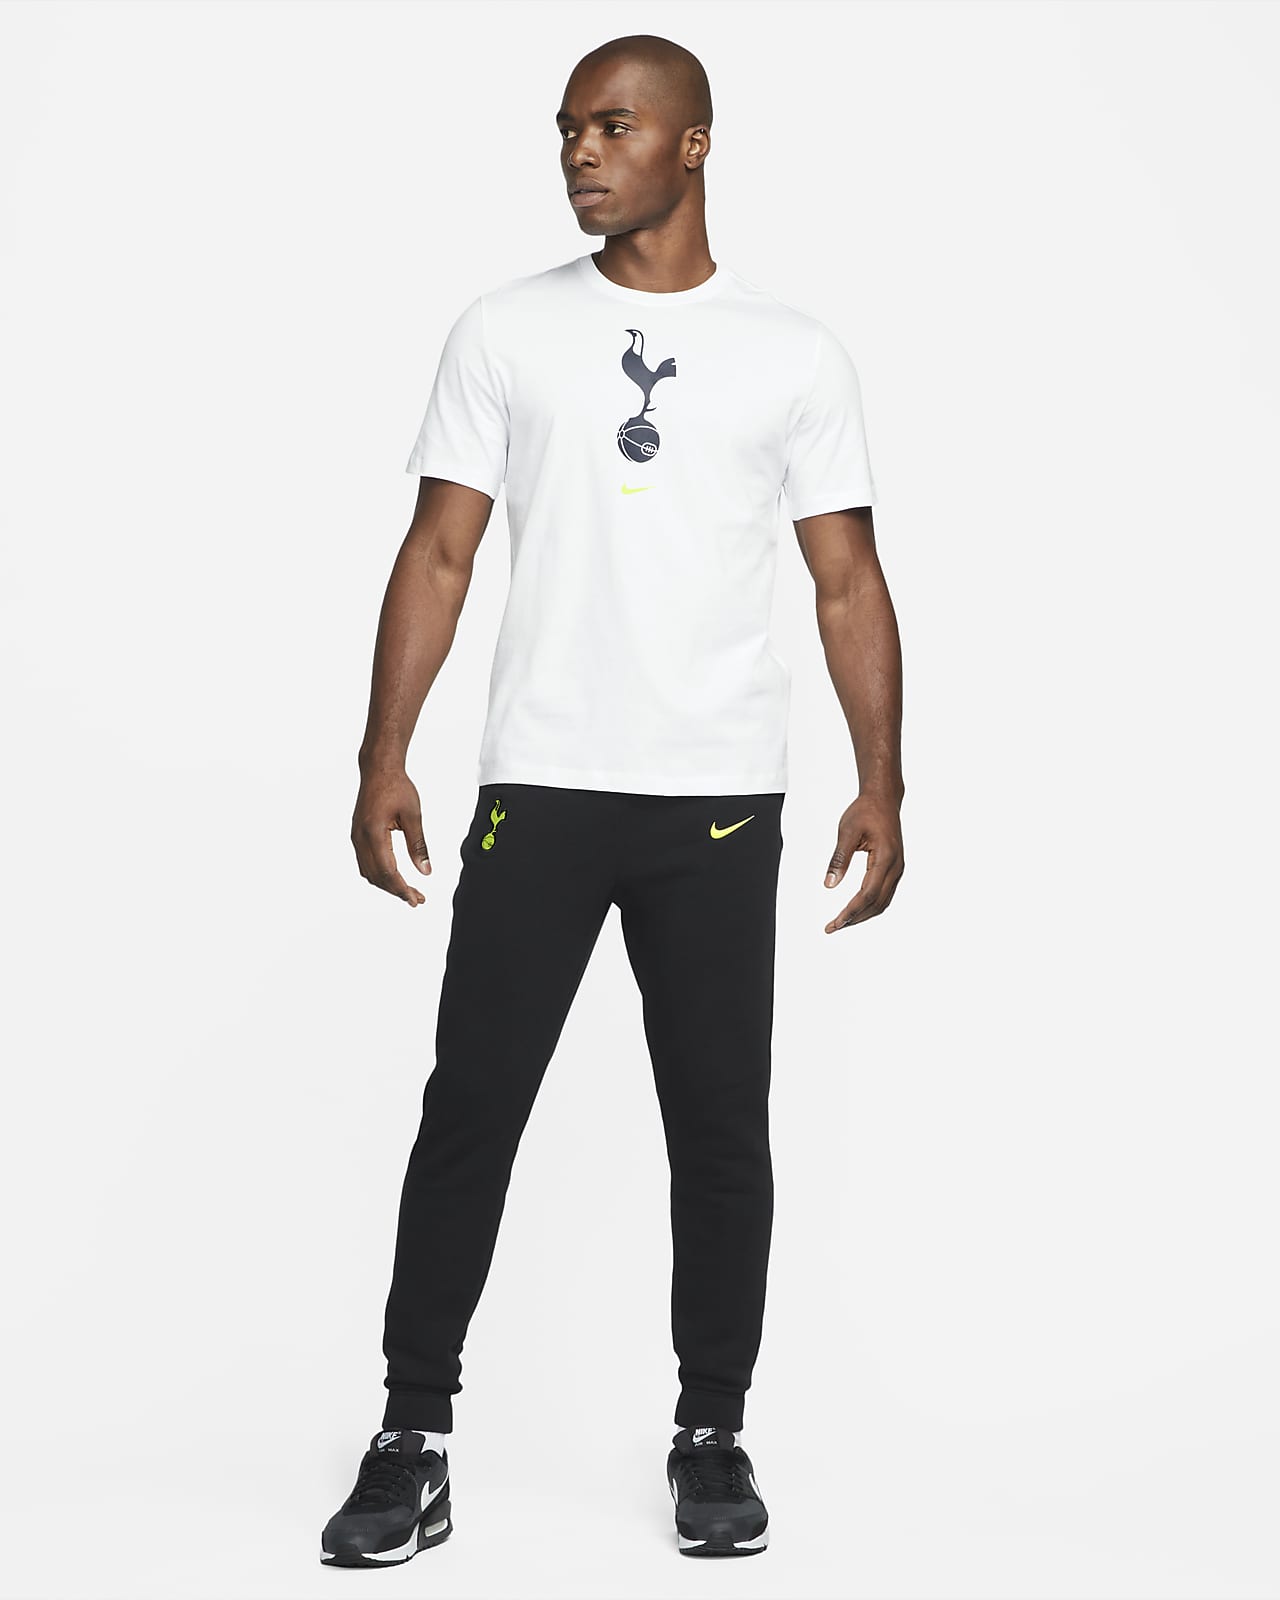 EST 1882 Crest T-Shirt Spurs 100% Cotton & Sizes S to 2XL Official Tottenham Hotspur 